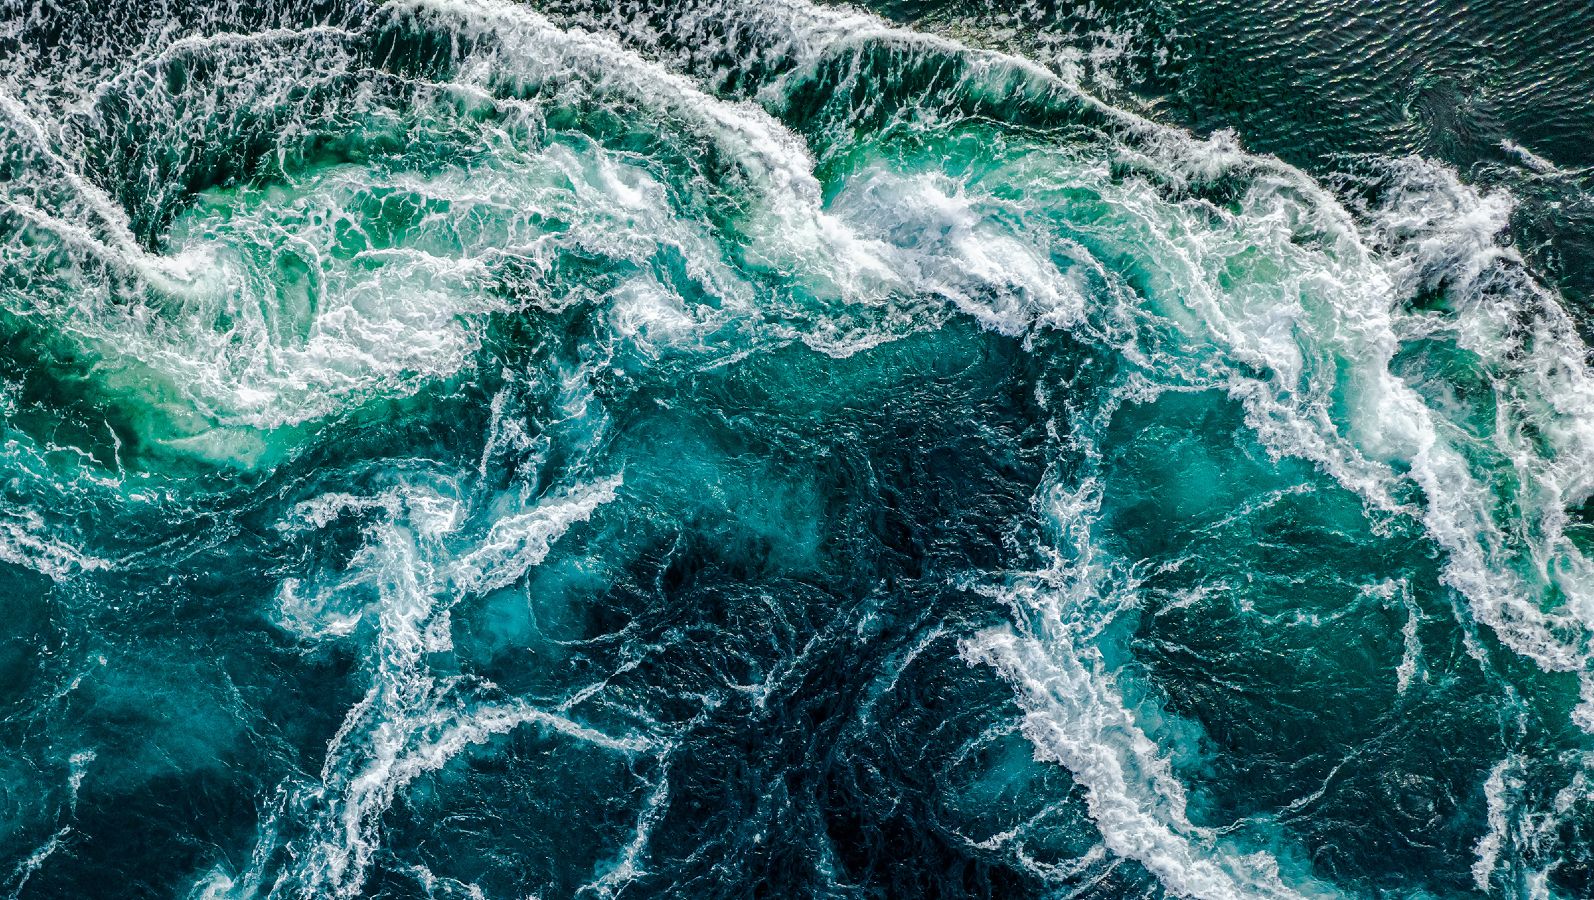 Aus der Vogelperspektive fällt der Blick auf das dunkelblaue Wasser eines aufgewühlten Meeres. Die Gischt bildet ein weißes Muster auf der Wasseroberfläche.